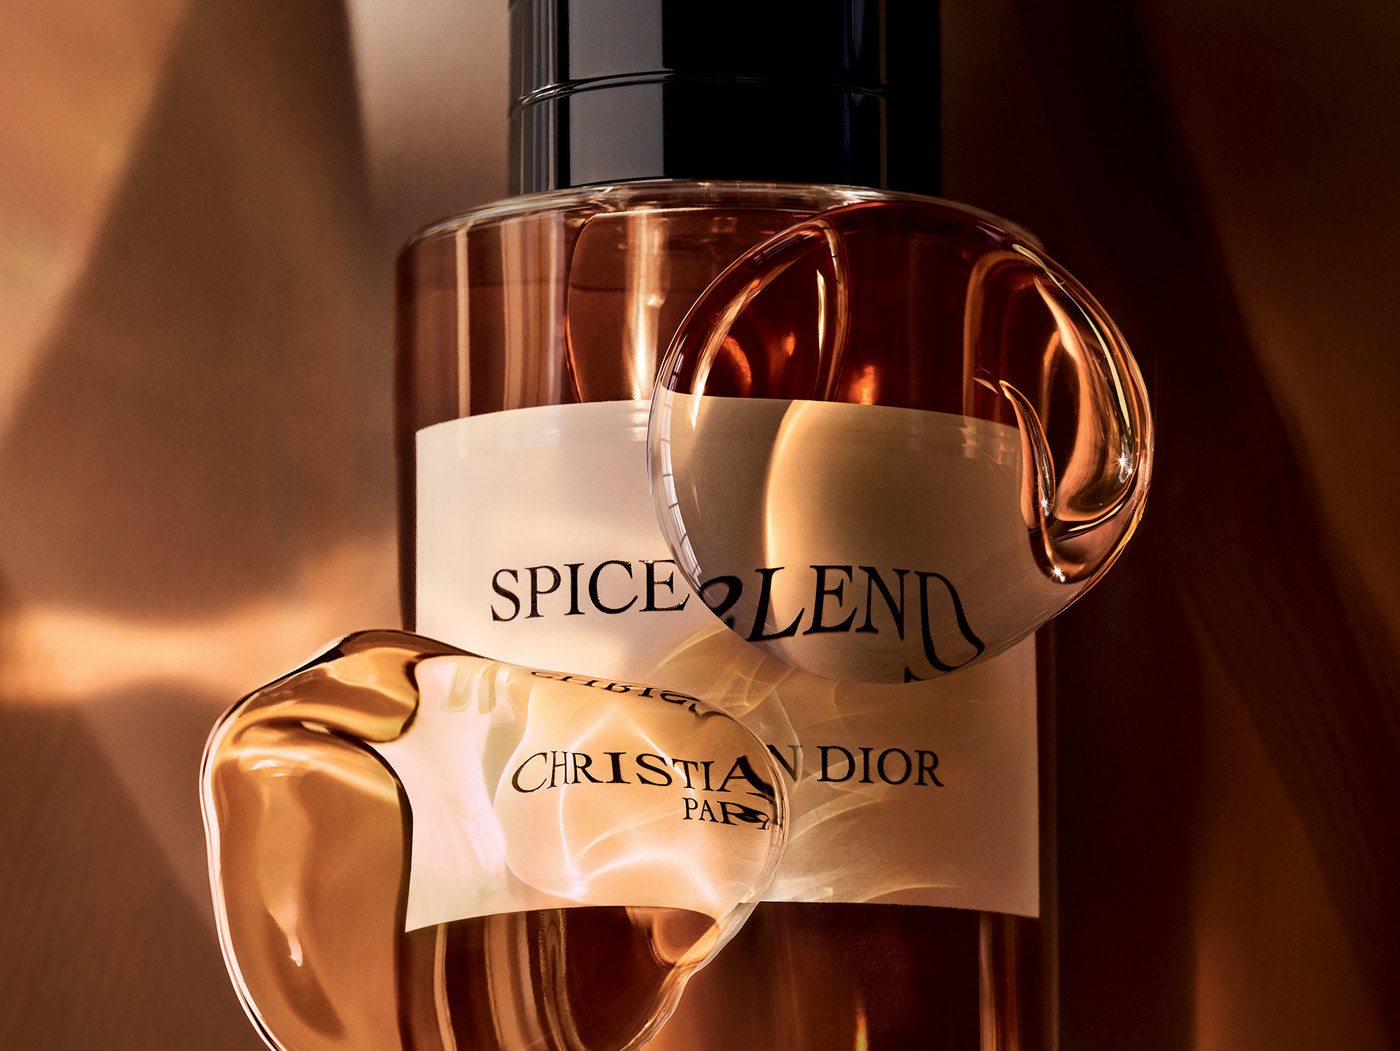 imagen 2 de Spice Blend, el nuevo viaje imaginario y aromático de Dior.